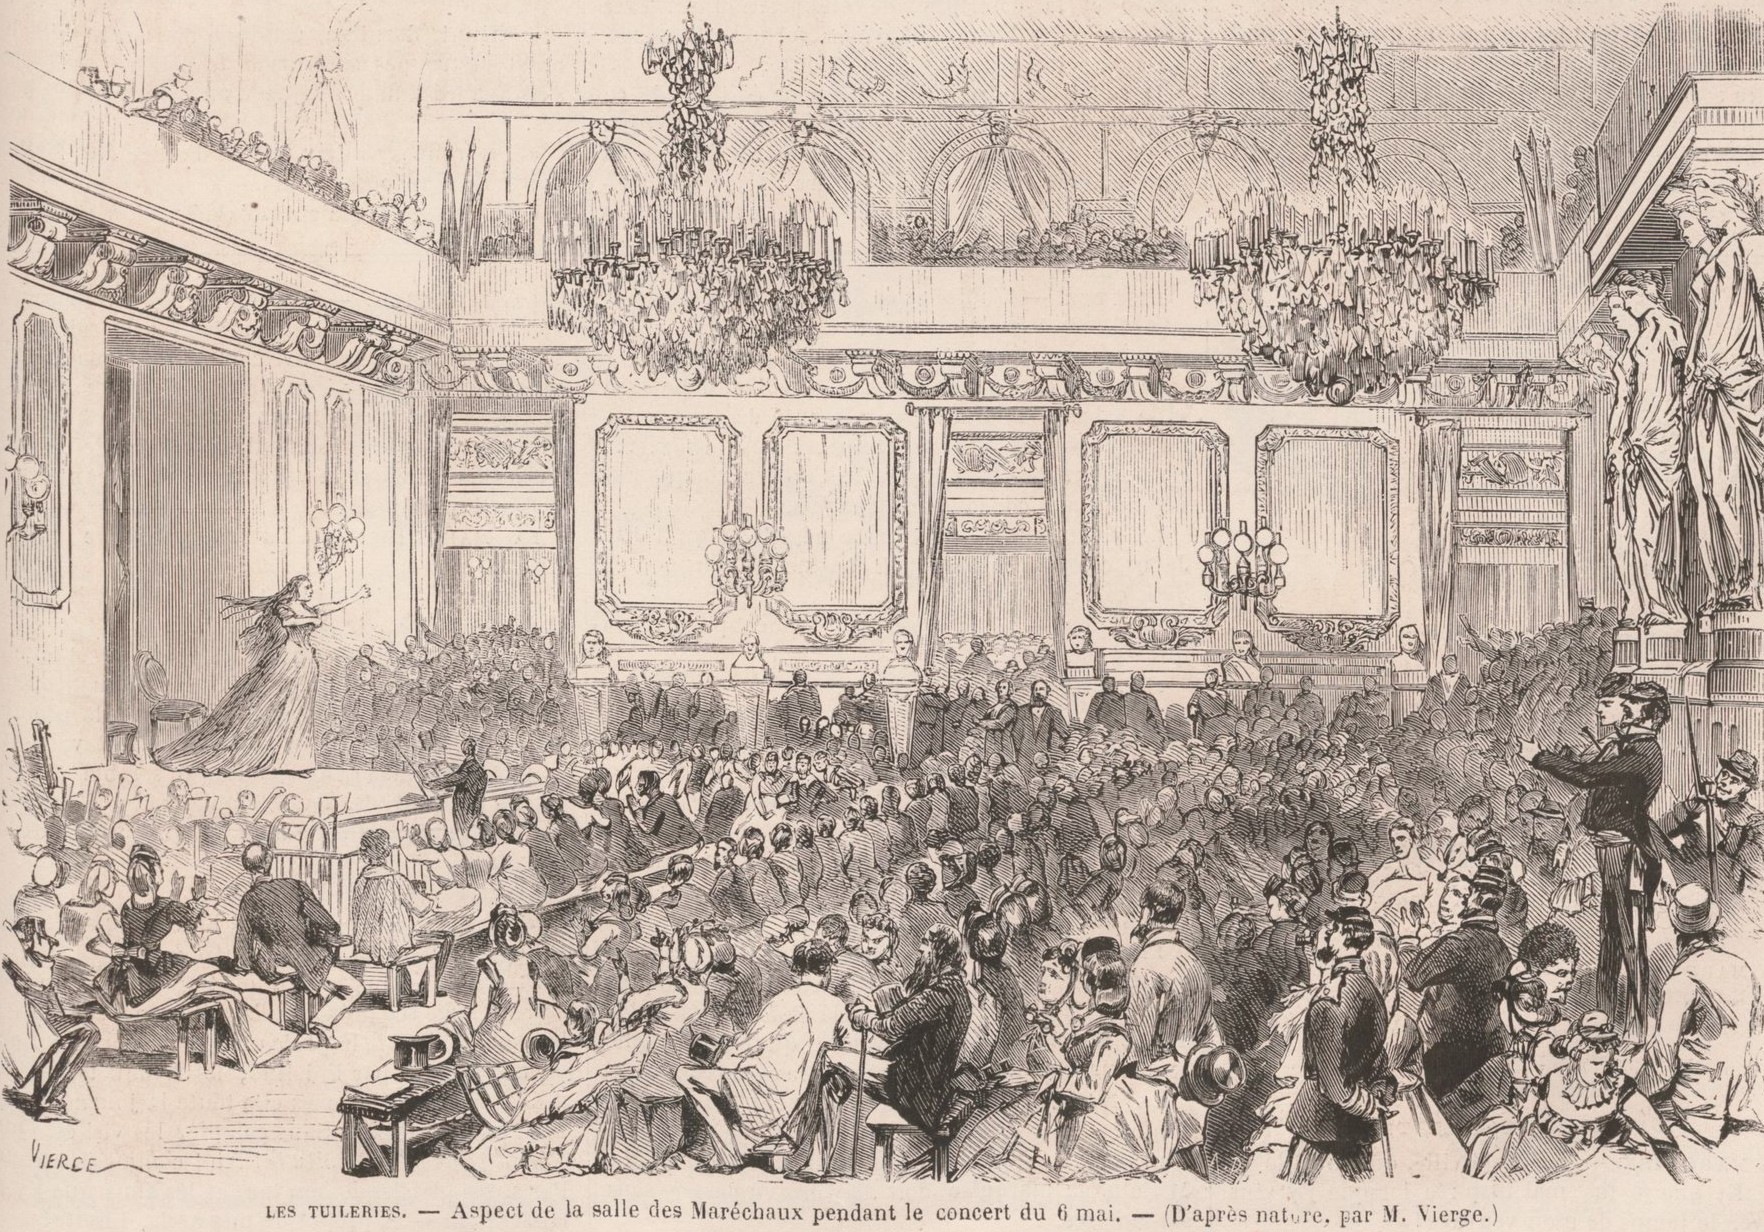 6 mai 1871 concert aux Tuileries, salle des maréchaux - Dessin de  Vierge (Le Monde Illustre mai 1871)